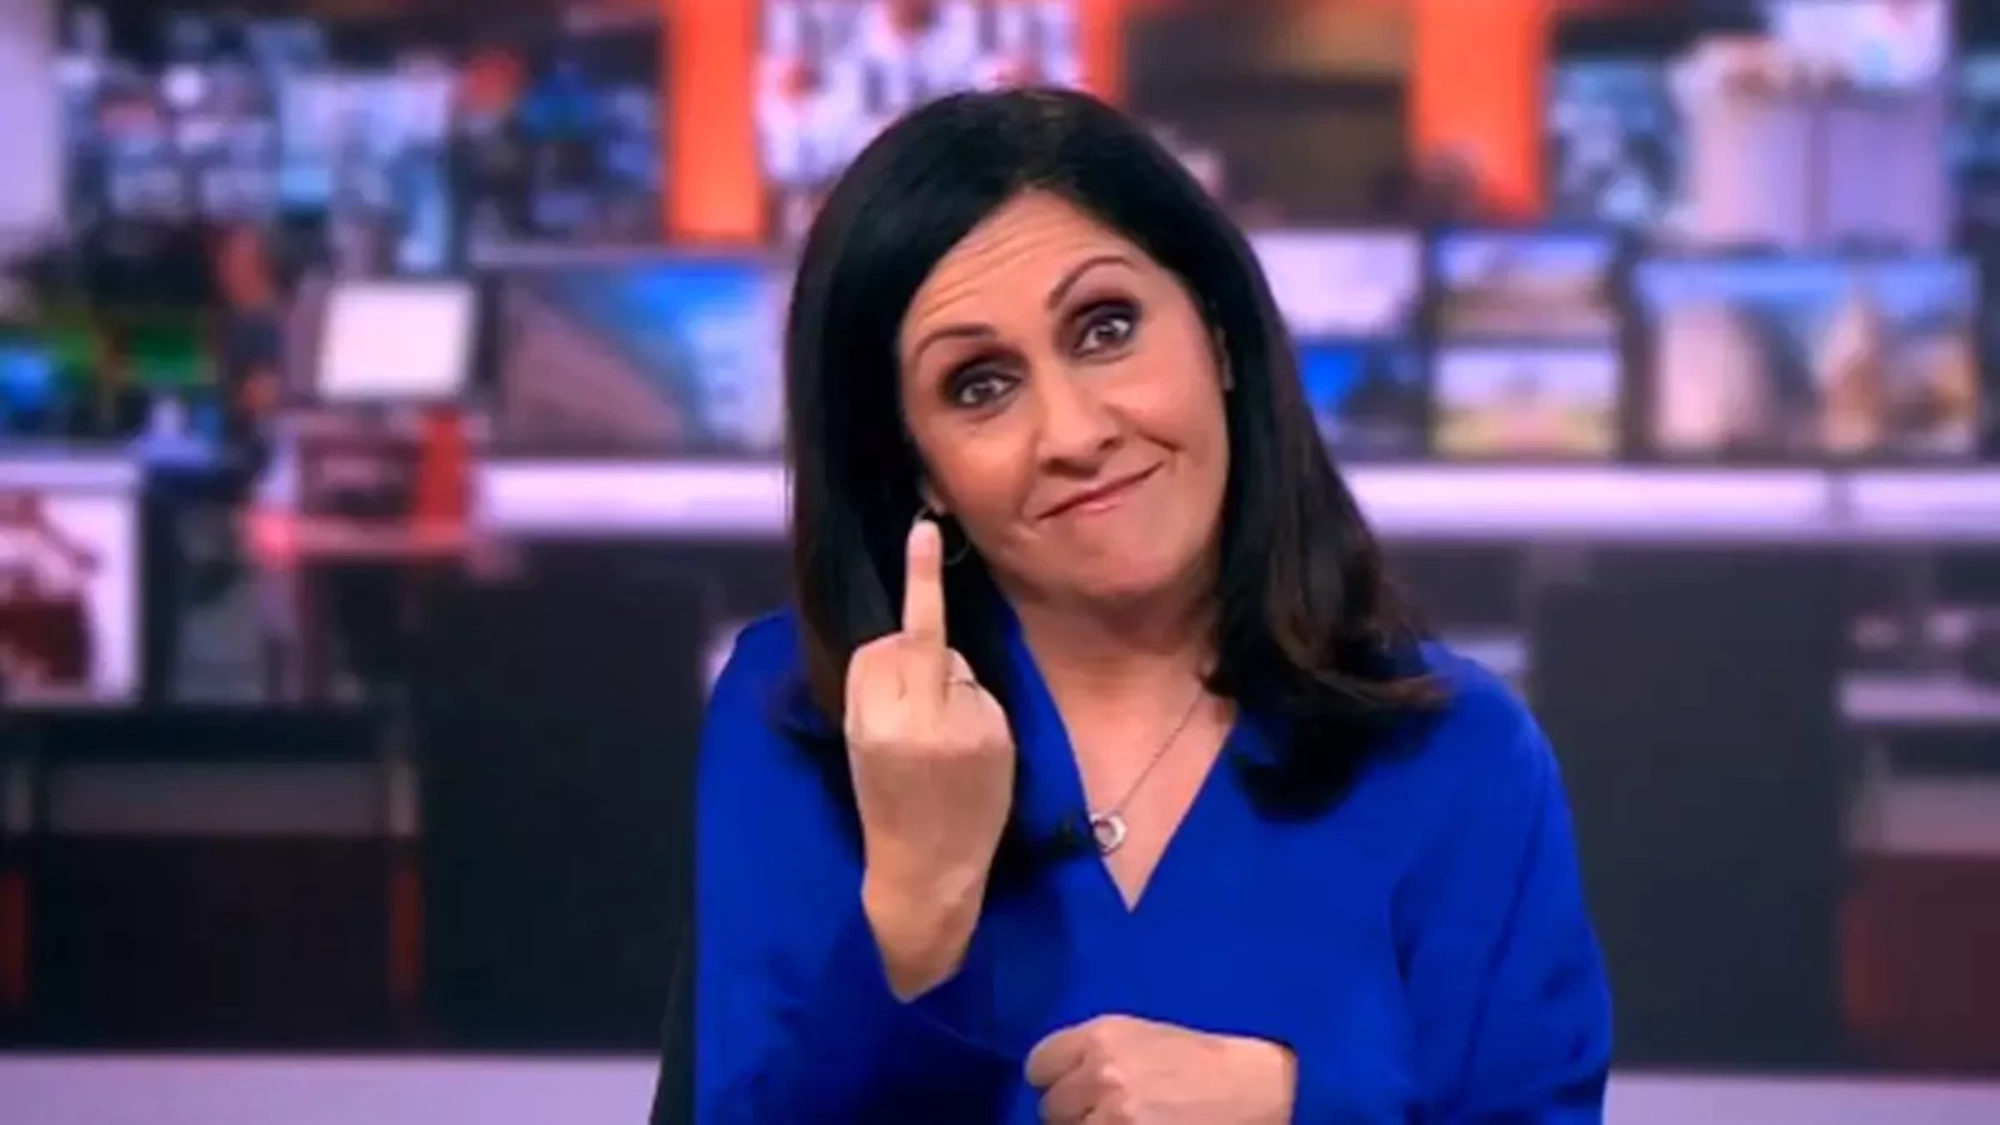 Pillan a una presentadora de la BBC haciendo la peineta en directo | VÍDEO